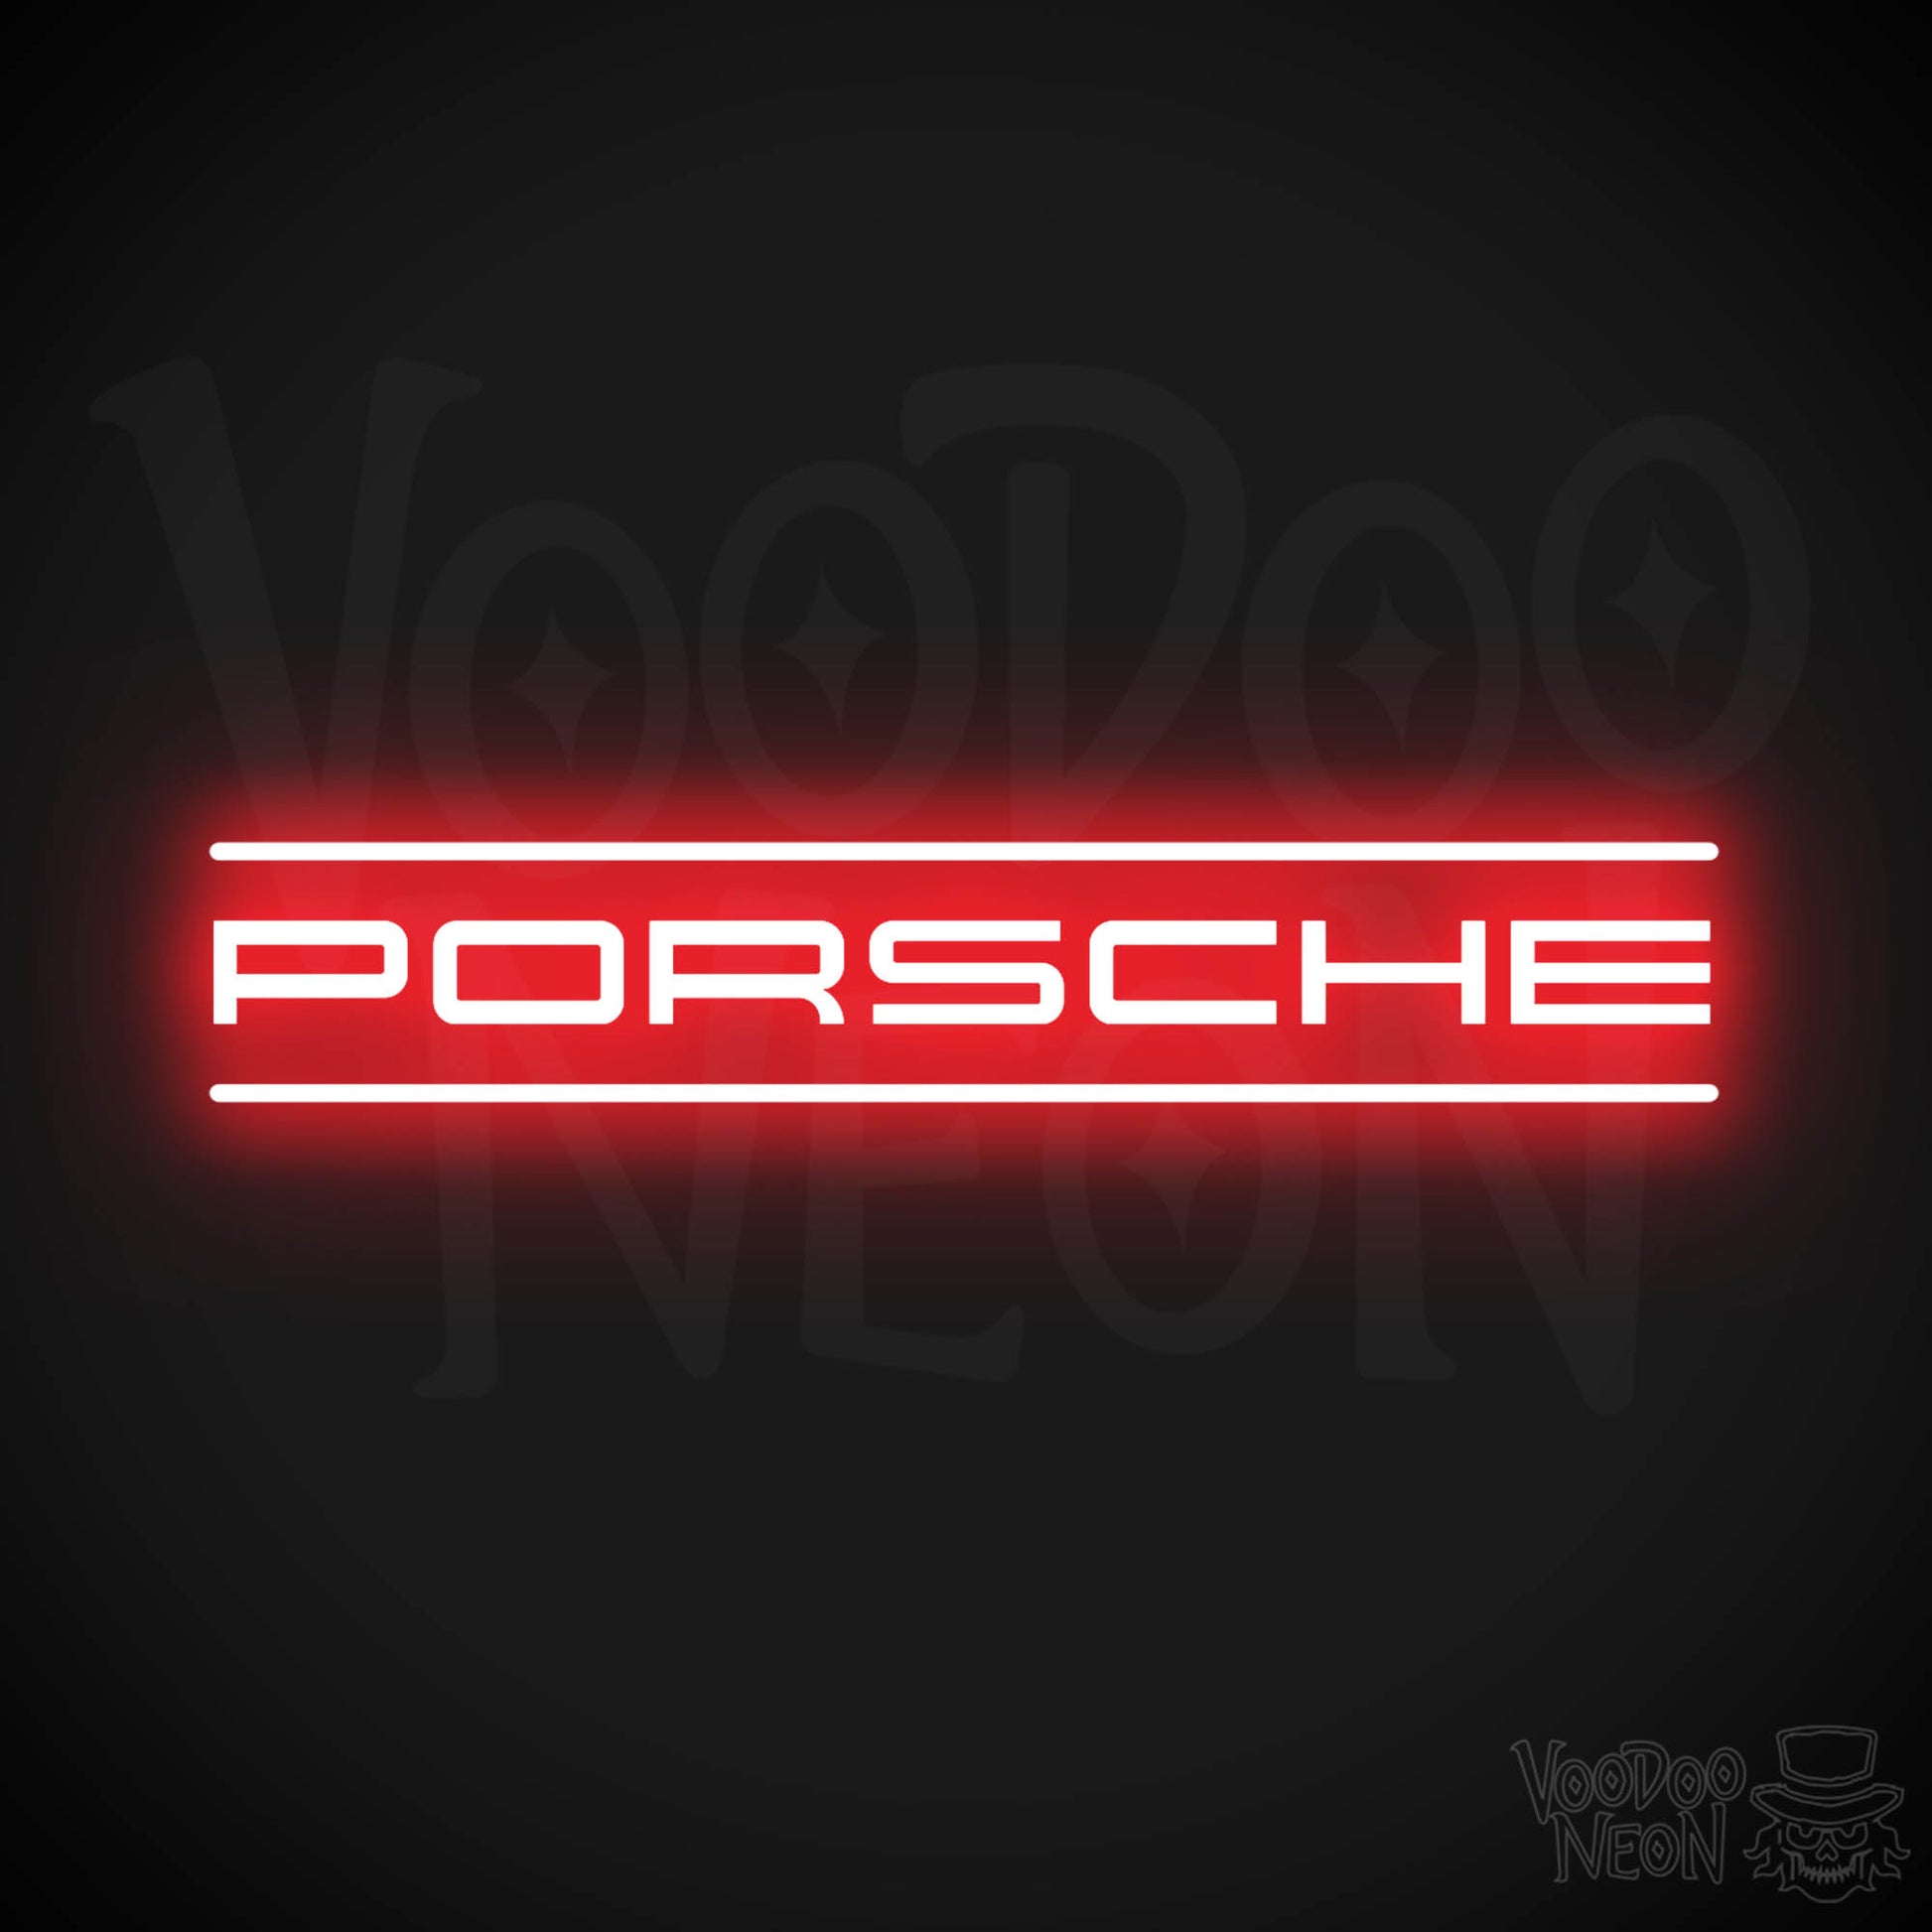 Porsche Neon Sign - Porsche Sign - Porsche Decor - Wall Art - Color Red